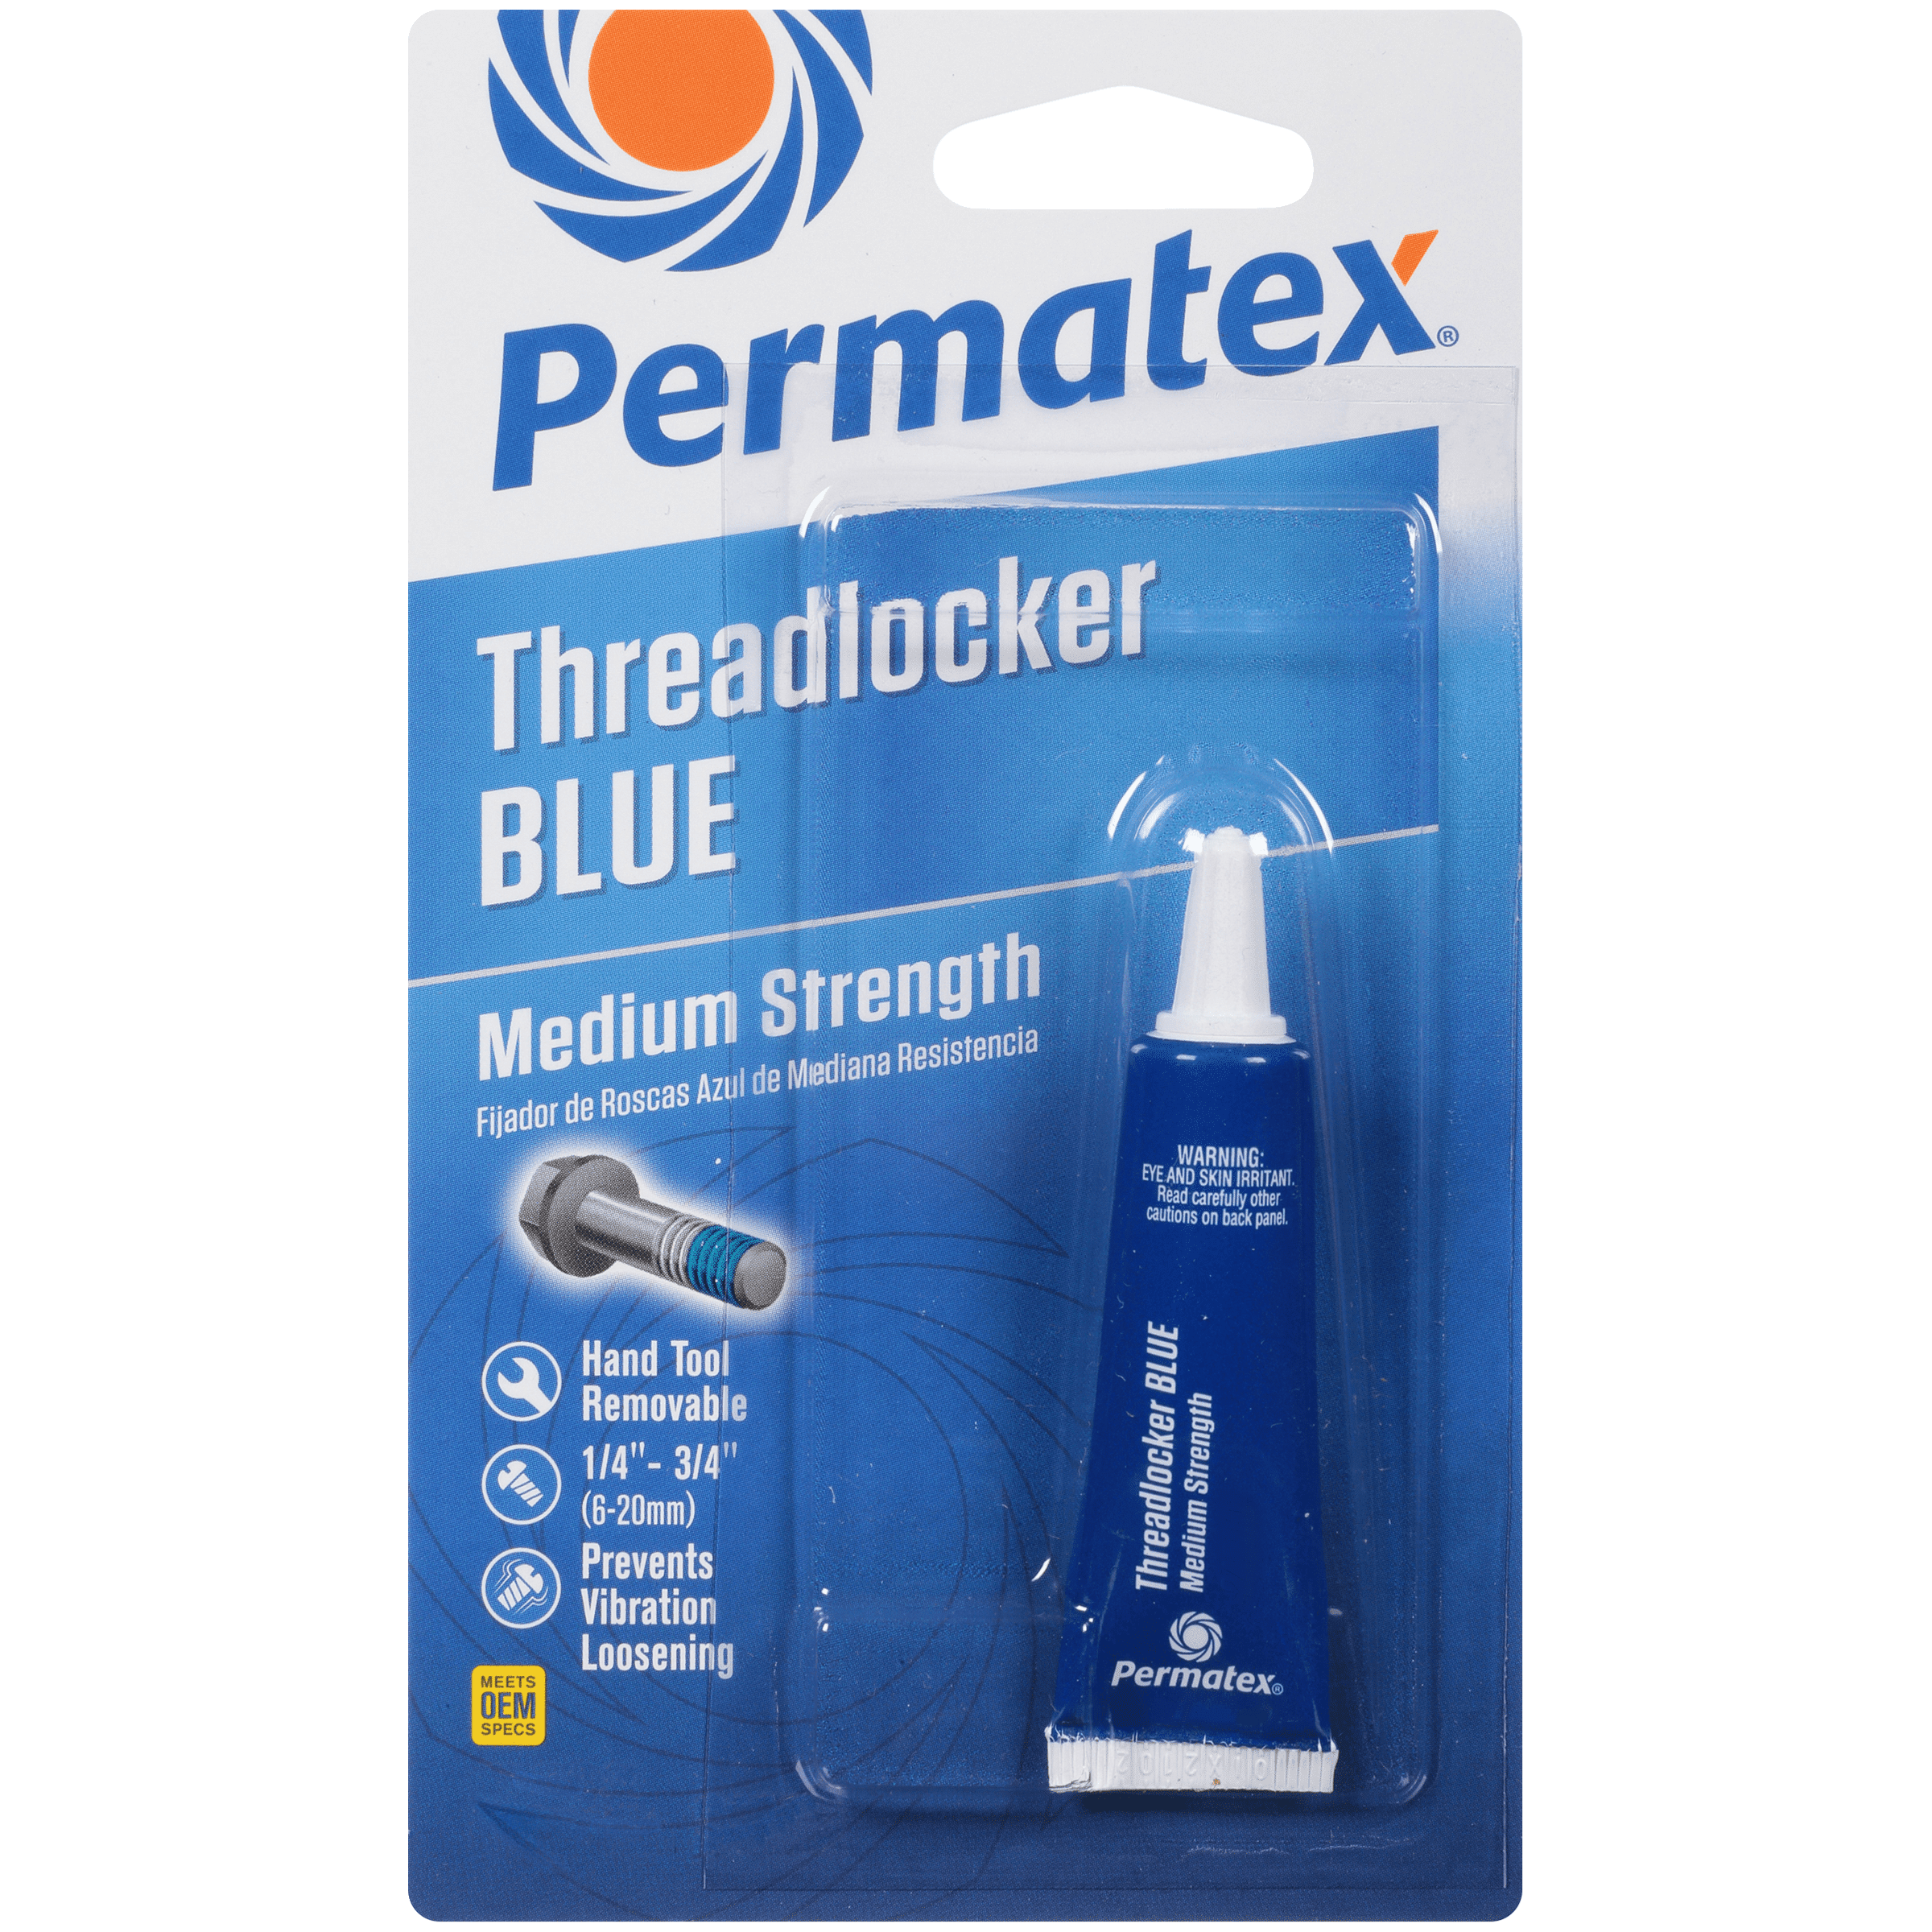 Permatex Medium Strength Threadlocker, Blue - 75185